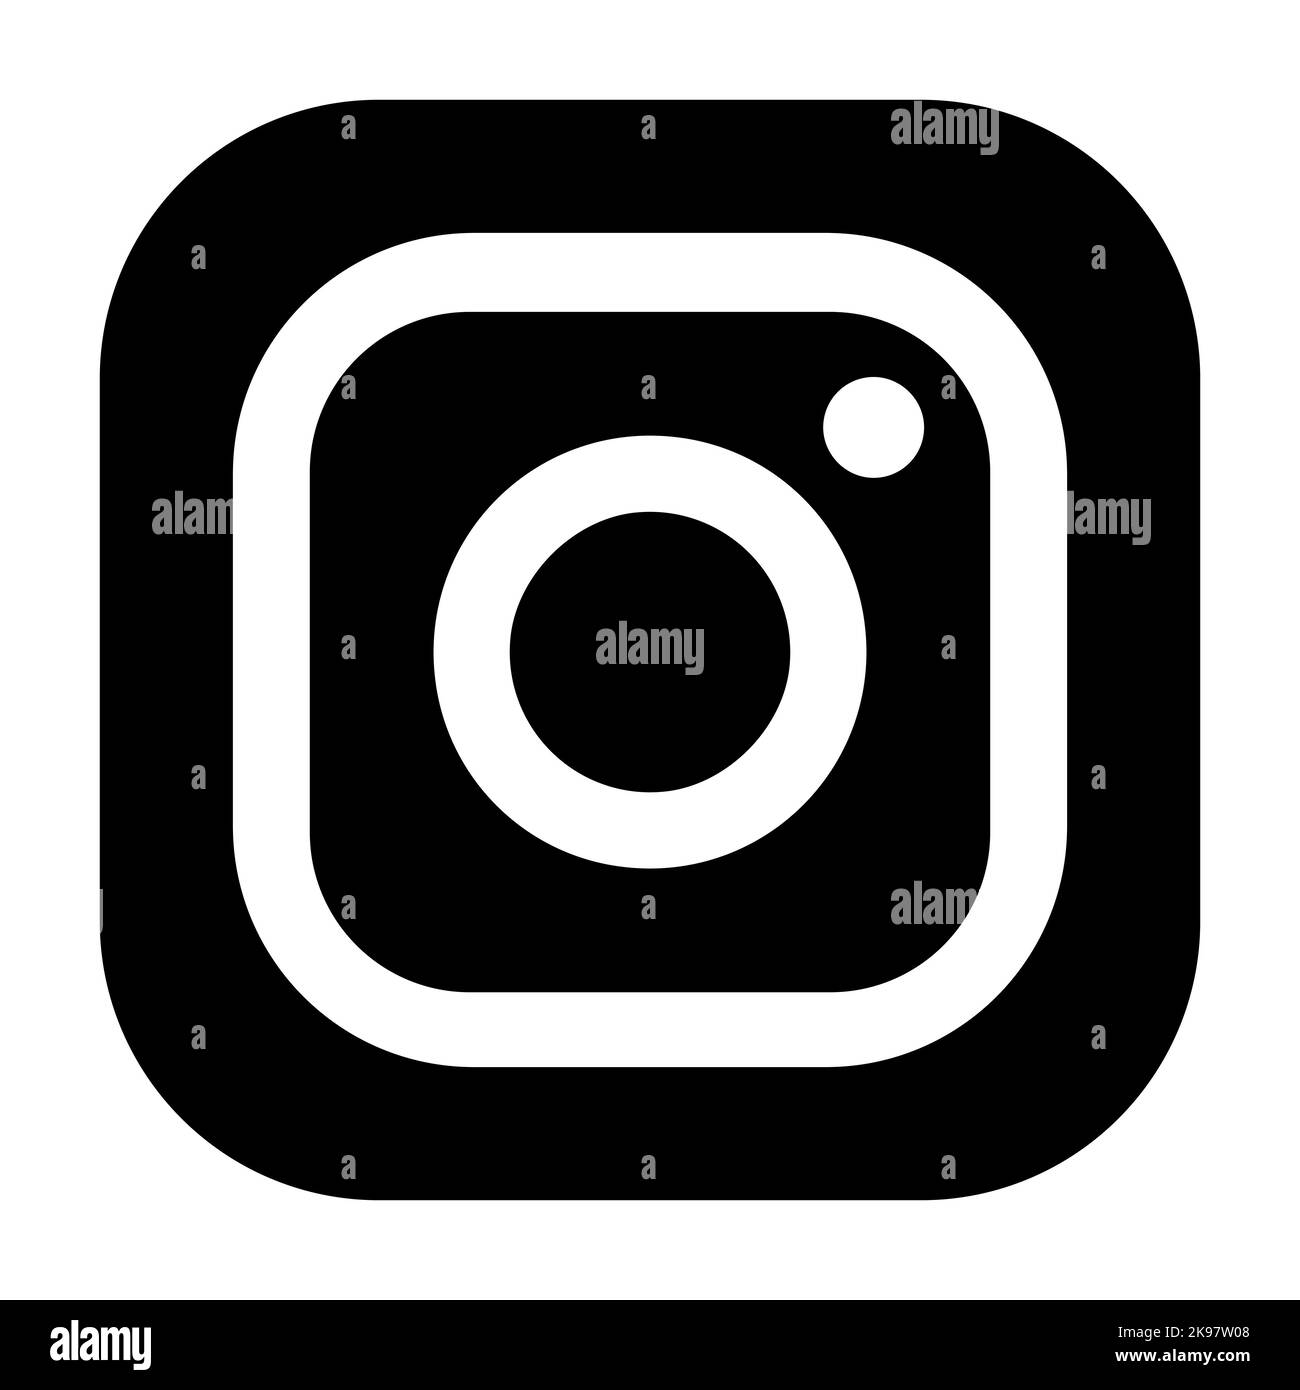 Kamerasymbol mit Instagram-Logo. Vektorgrafik redaktionelle Illustration isoliert auf weißem Hintergrund Stock Vektor